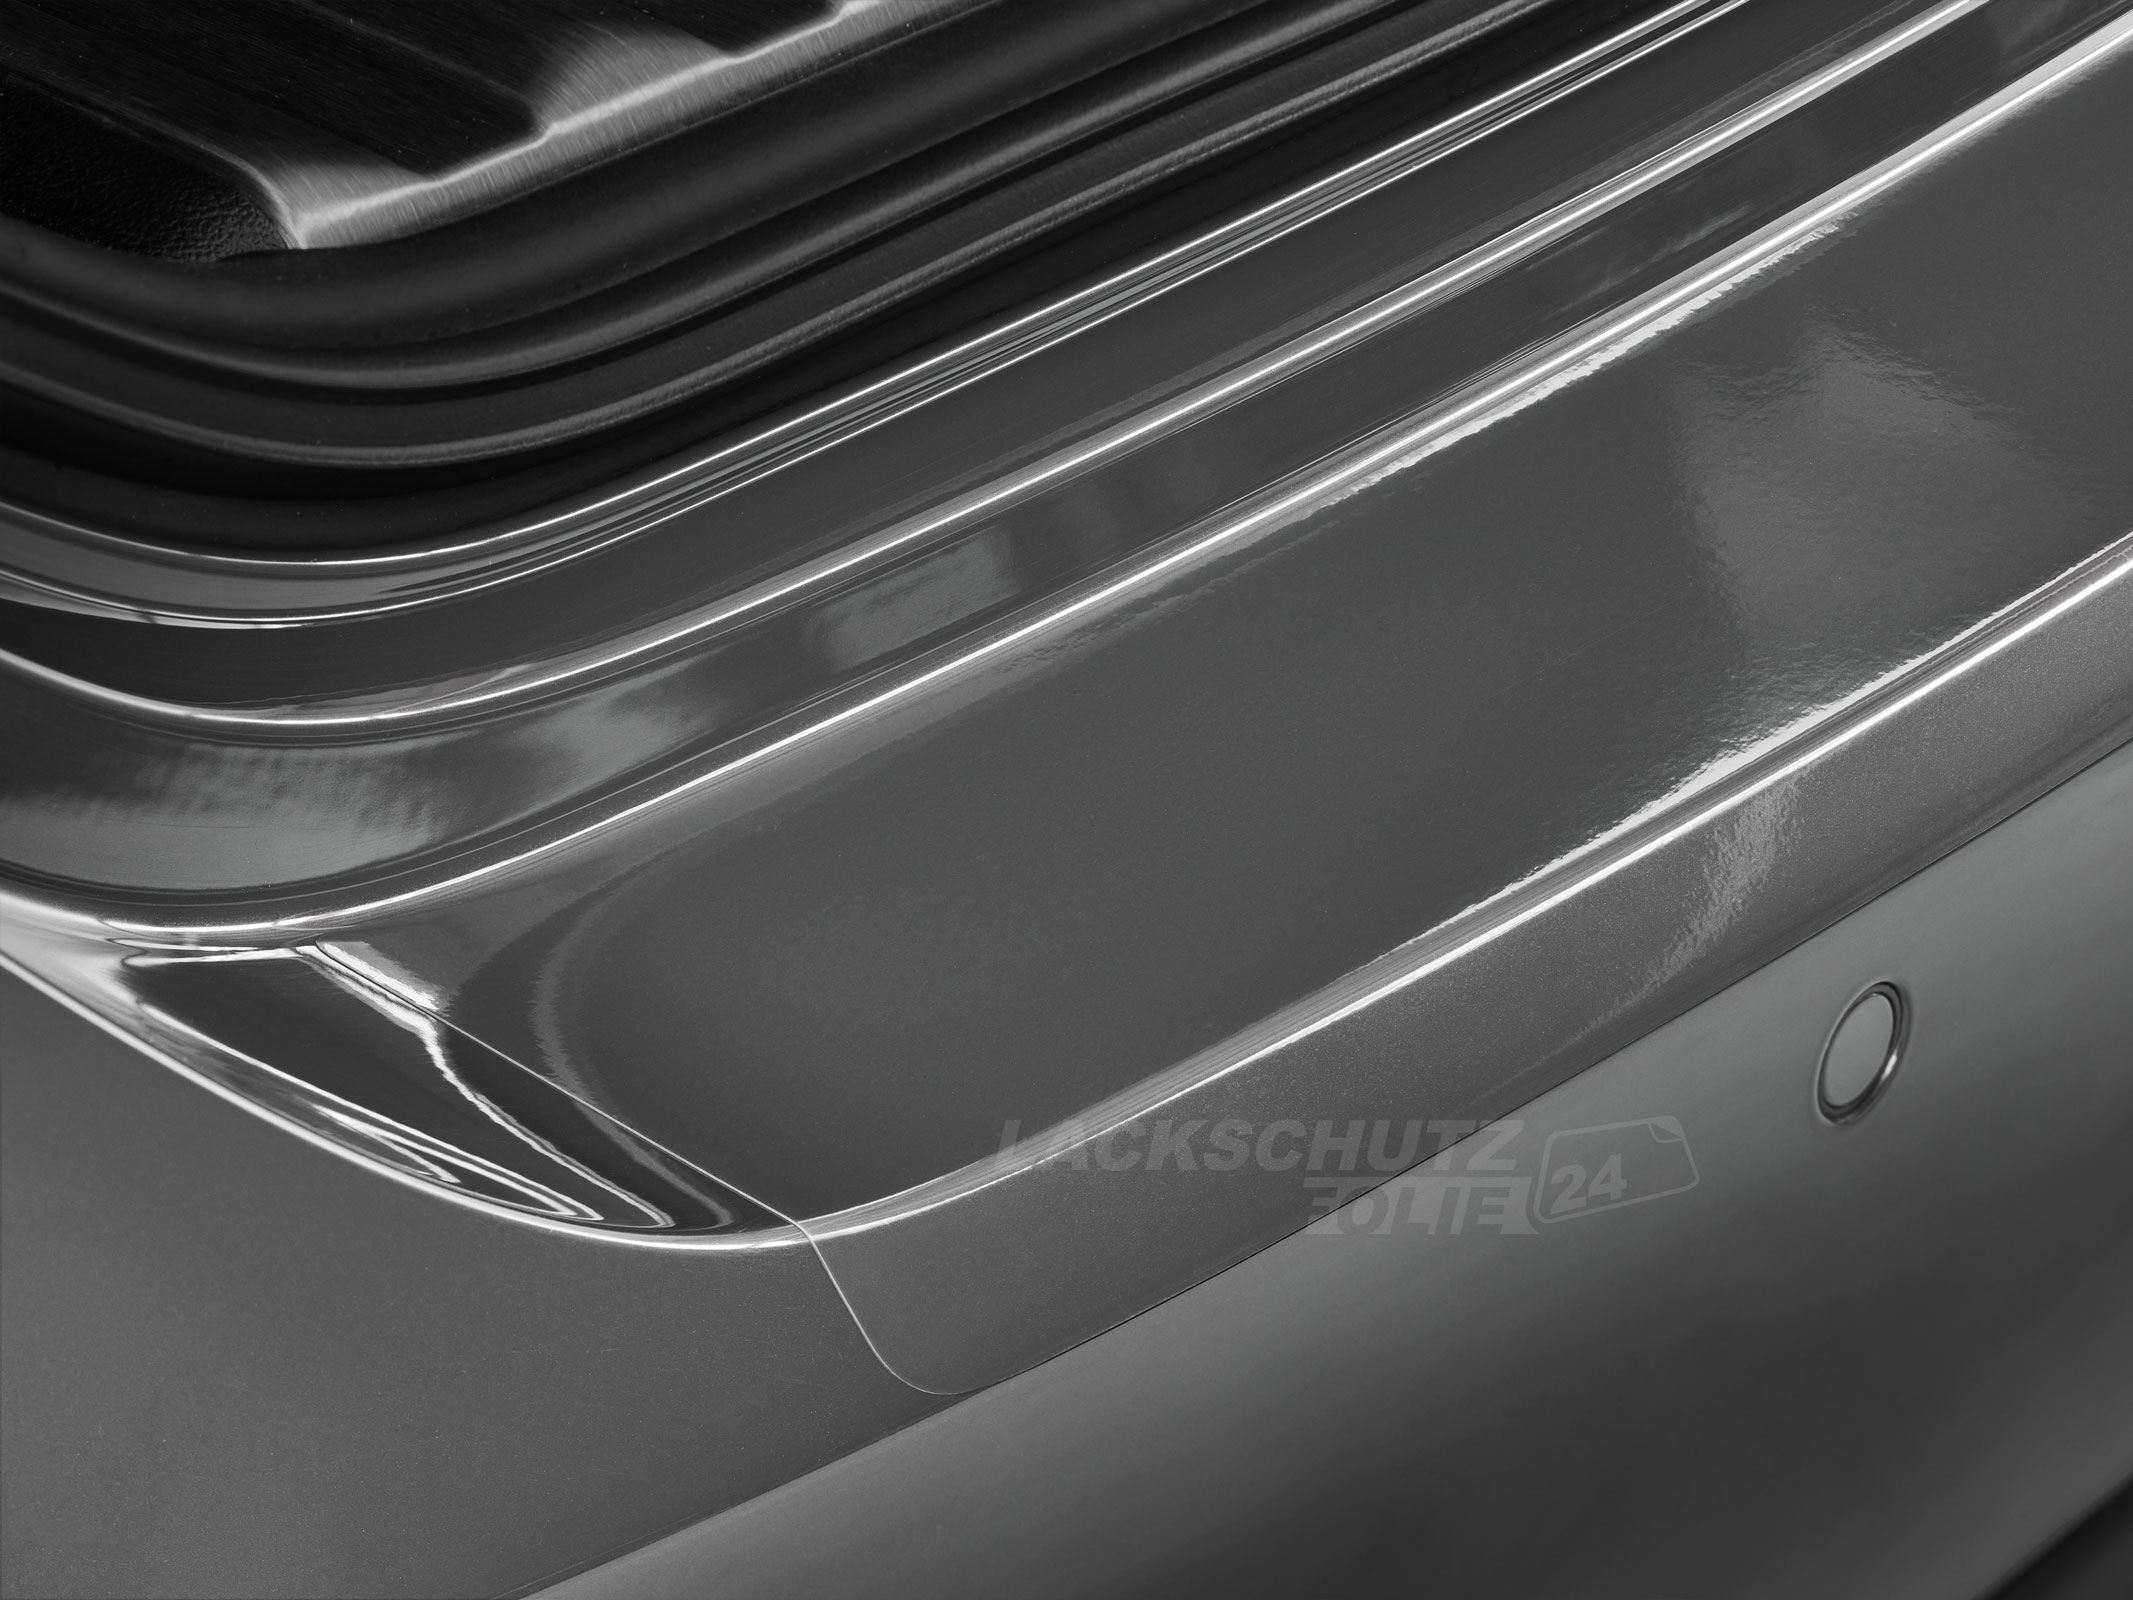 Ladekantenschutzfolie - Transparent Glatt Hochglänzend 240 µm stark für BMW X5 Typ E53, BJ 1999-2006